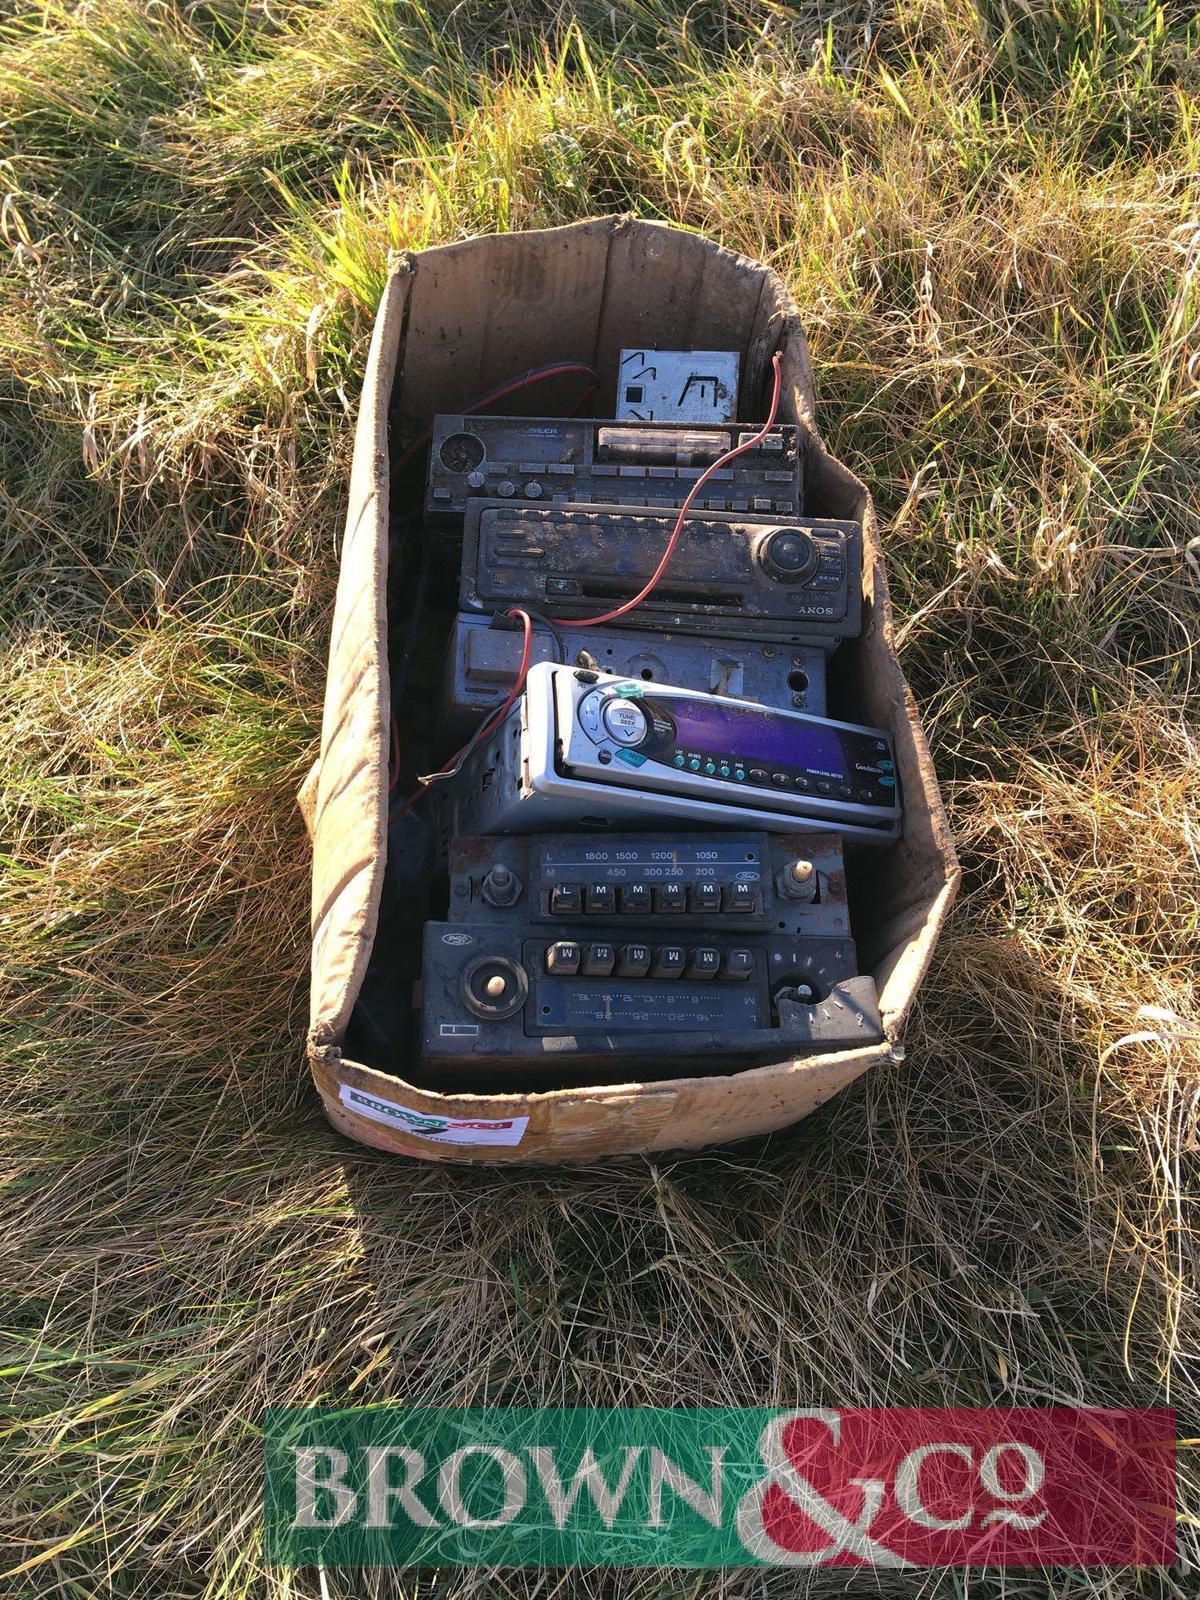 Quantity of radios